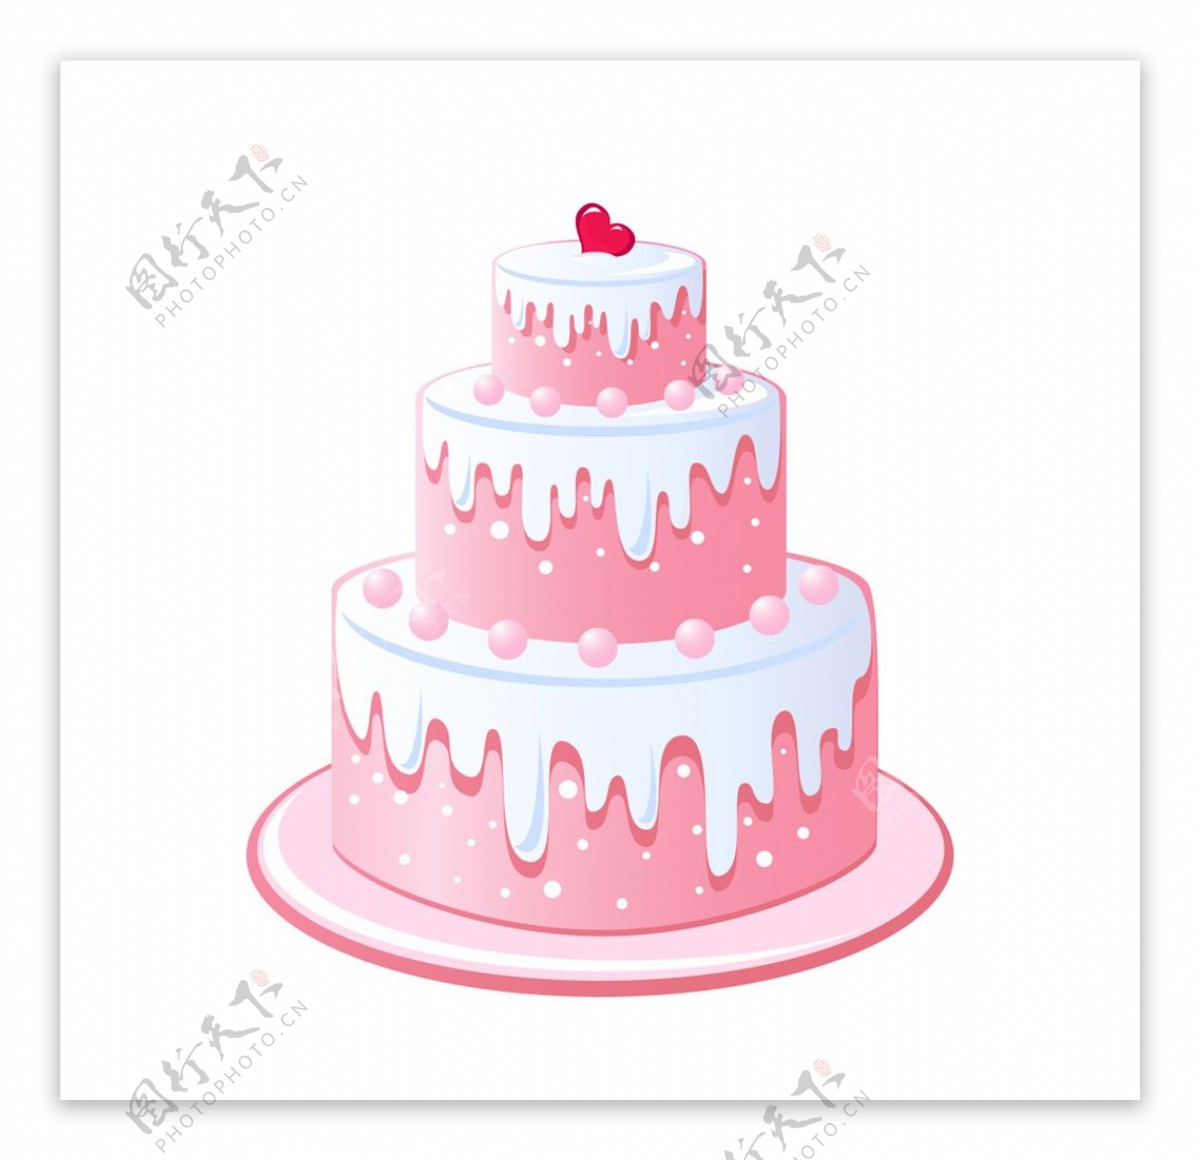 卡通粉色可爱蛋糕